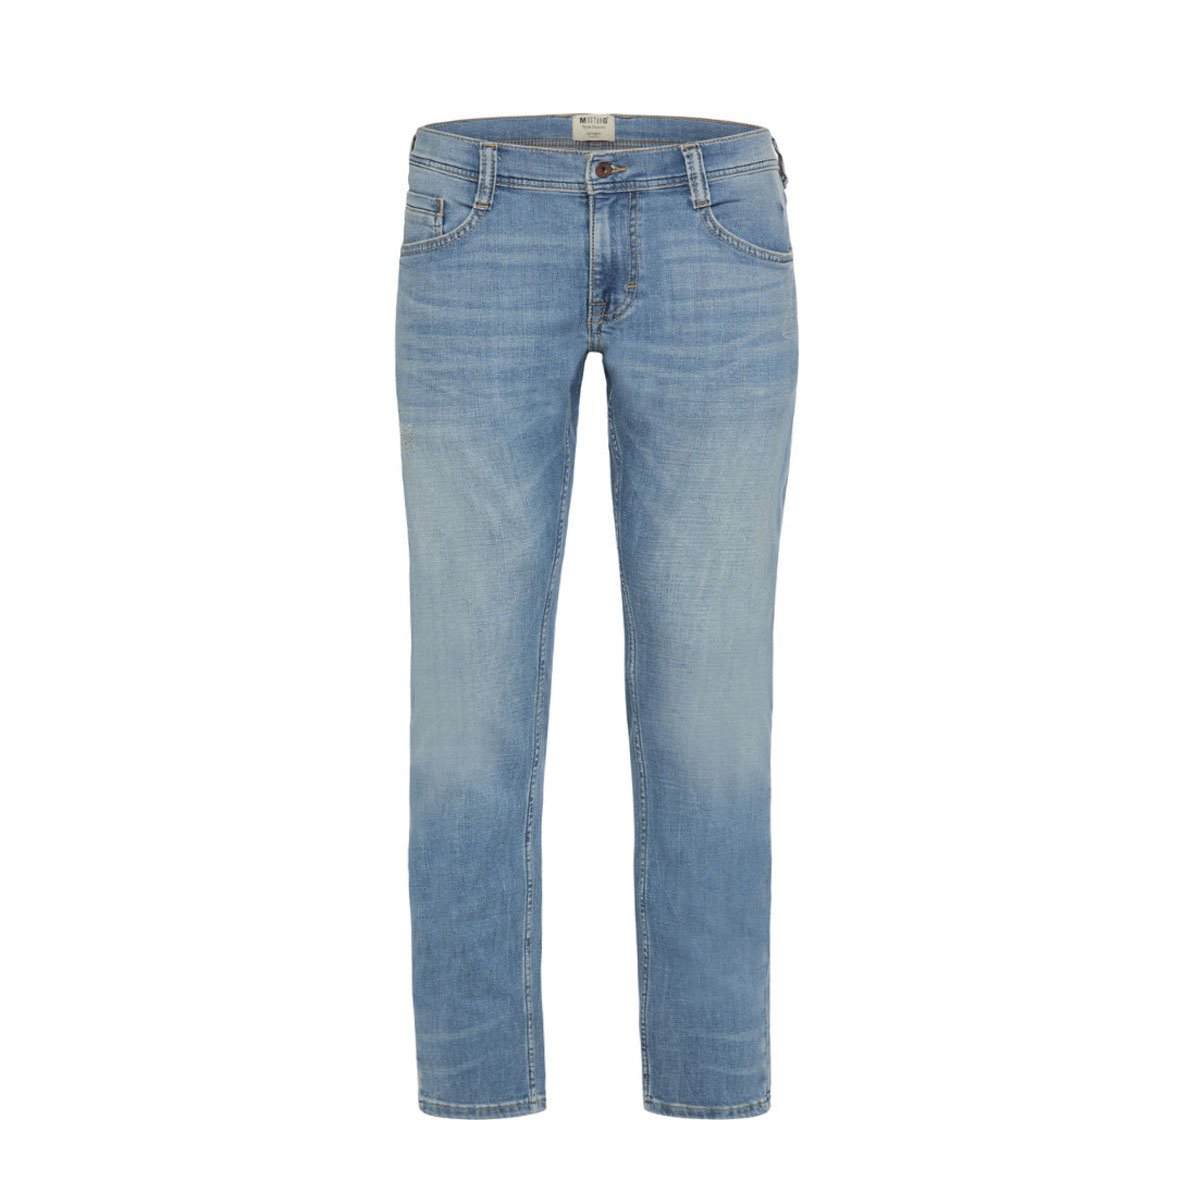 Slim-fit Stretchable Denim Jeans Pant For Men - Light Blue (NZ) Details